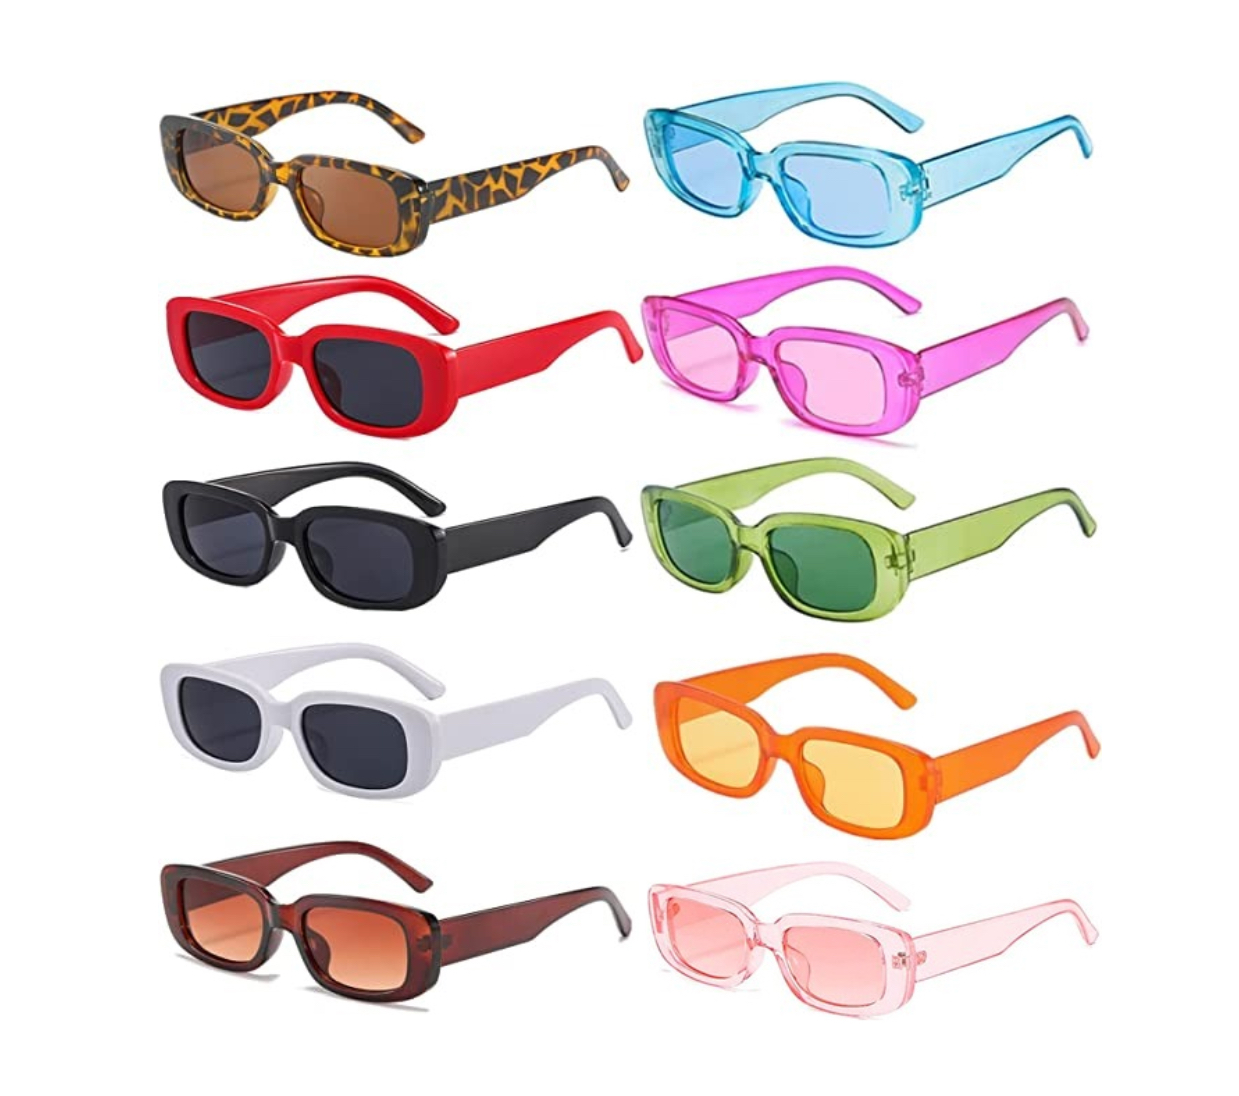 Organizador de lentes de sol, soporte de madera para lentes de sol para el  hogar, soporte para gafas de sol, decoración del hogar (blanco-1